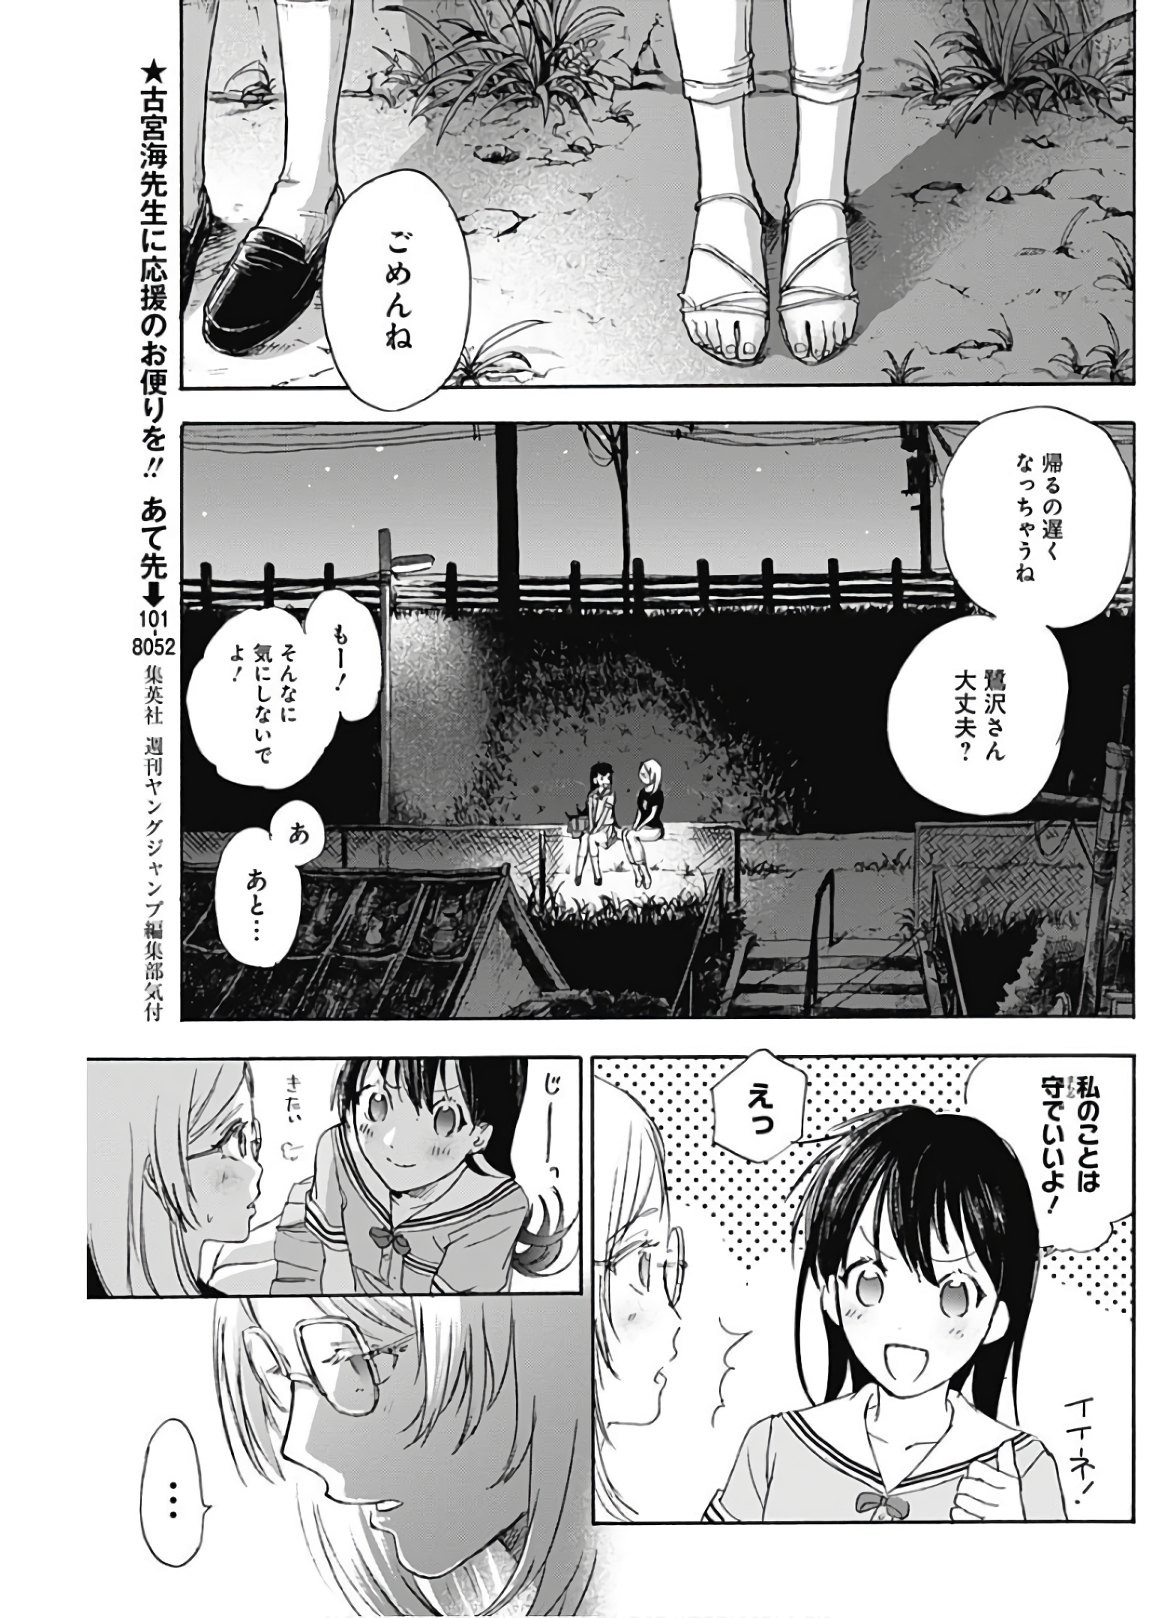 Kawaisou ni ne, Genki-kun - Chapter 007 - Page 15